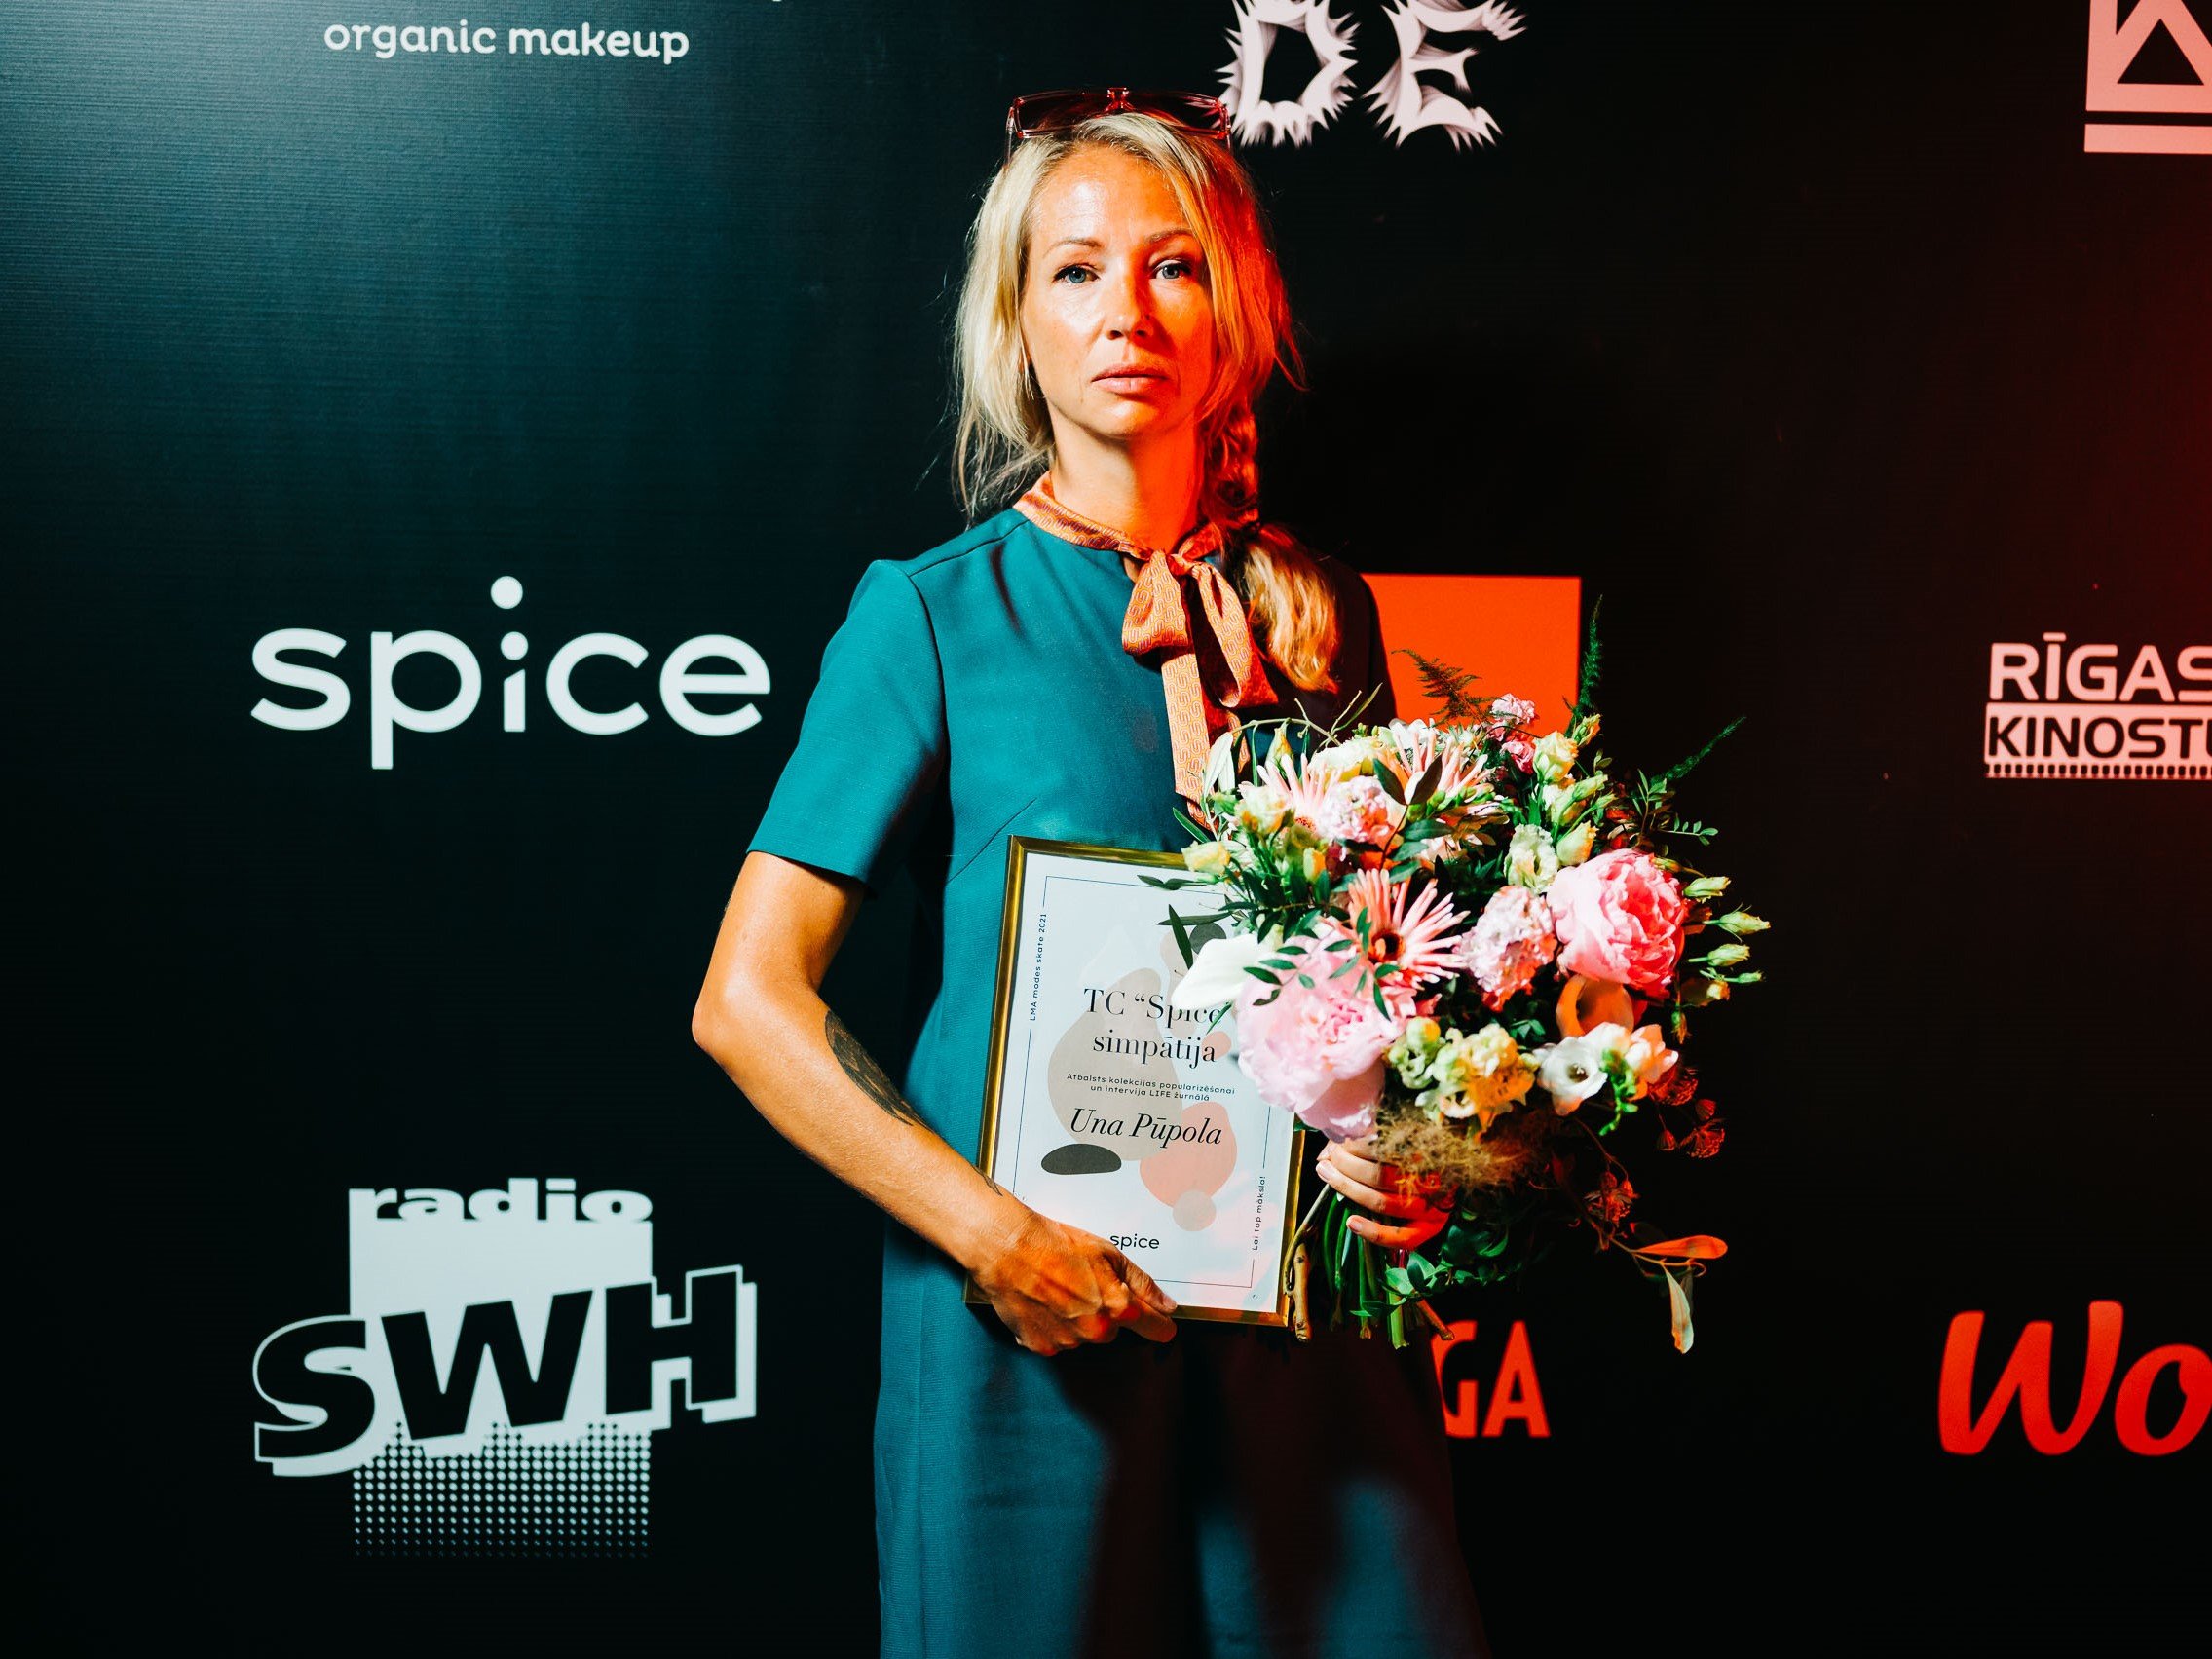  Ежегодный показ моды ЛХА: специальную награду "Spice" получила Уна Пупола  